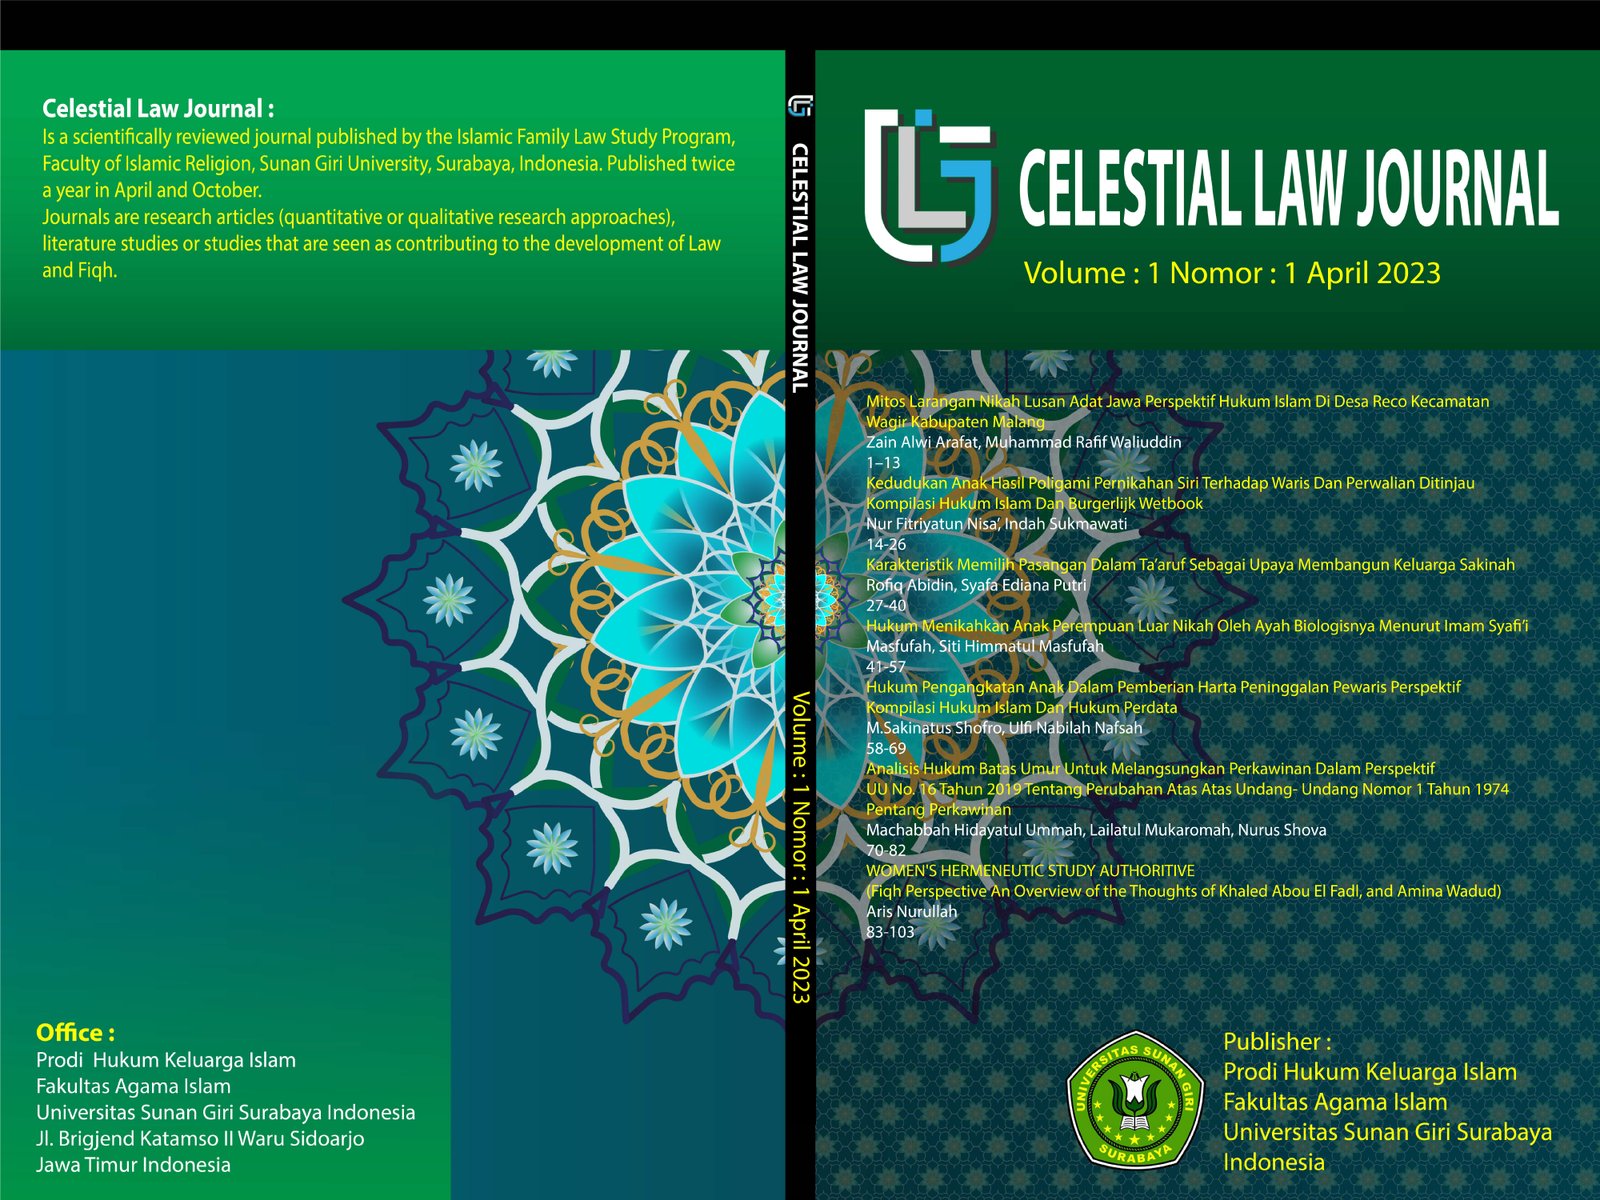 					Lihat Vol 1 No 1 (2023): Celestial Law Journal Vol 1 No 1 April 2023
				